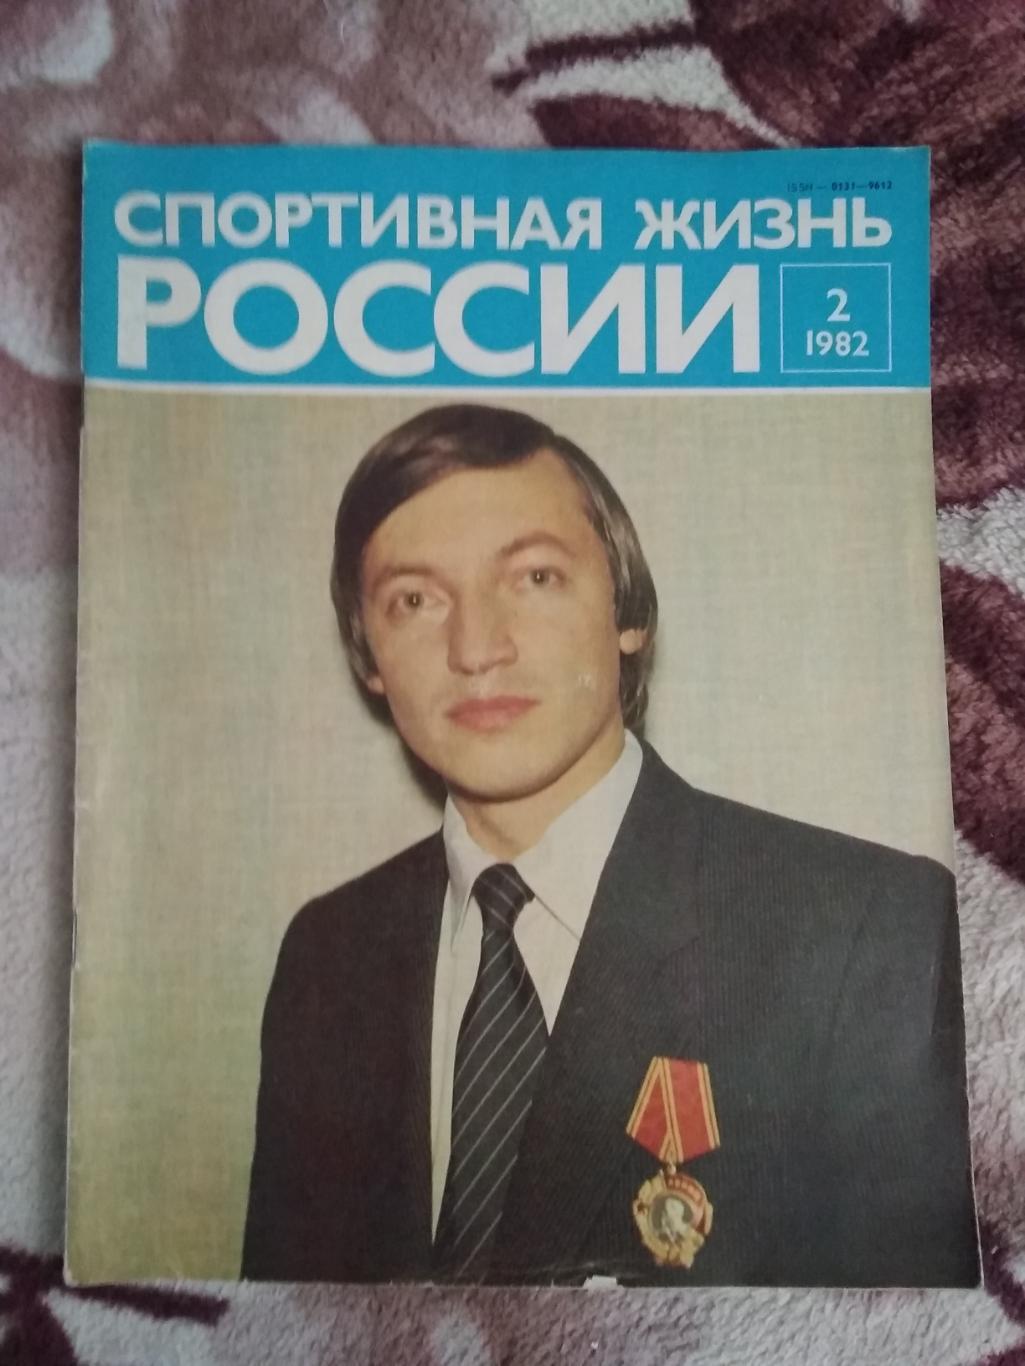 Журнал.Спортивная жизнь России № 2 1982 г.